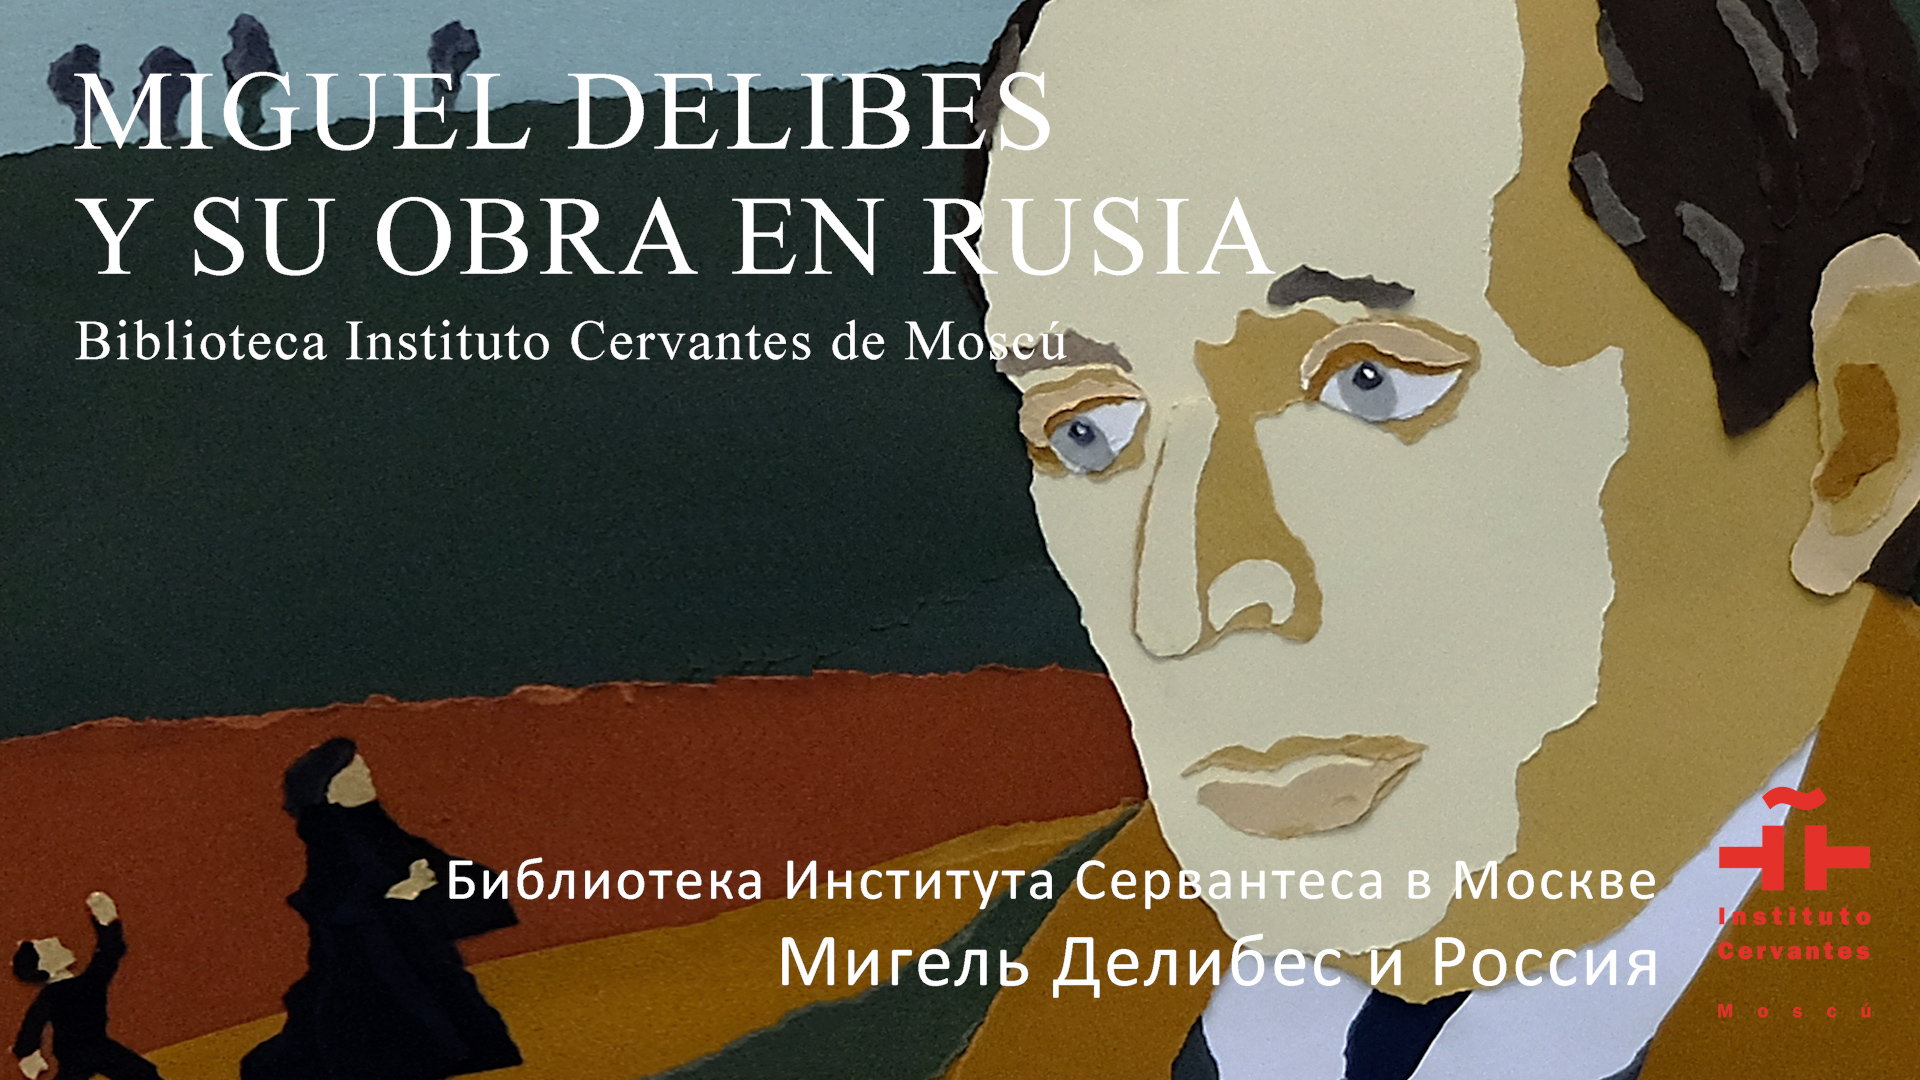 Miguel Delibes y su obra en Rusia